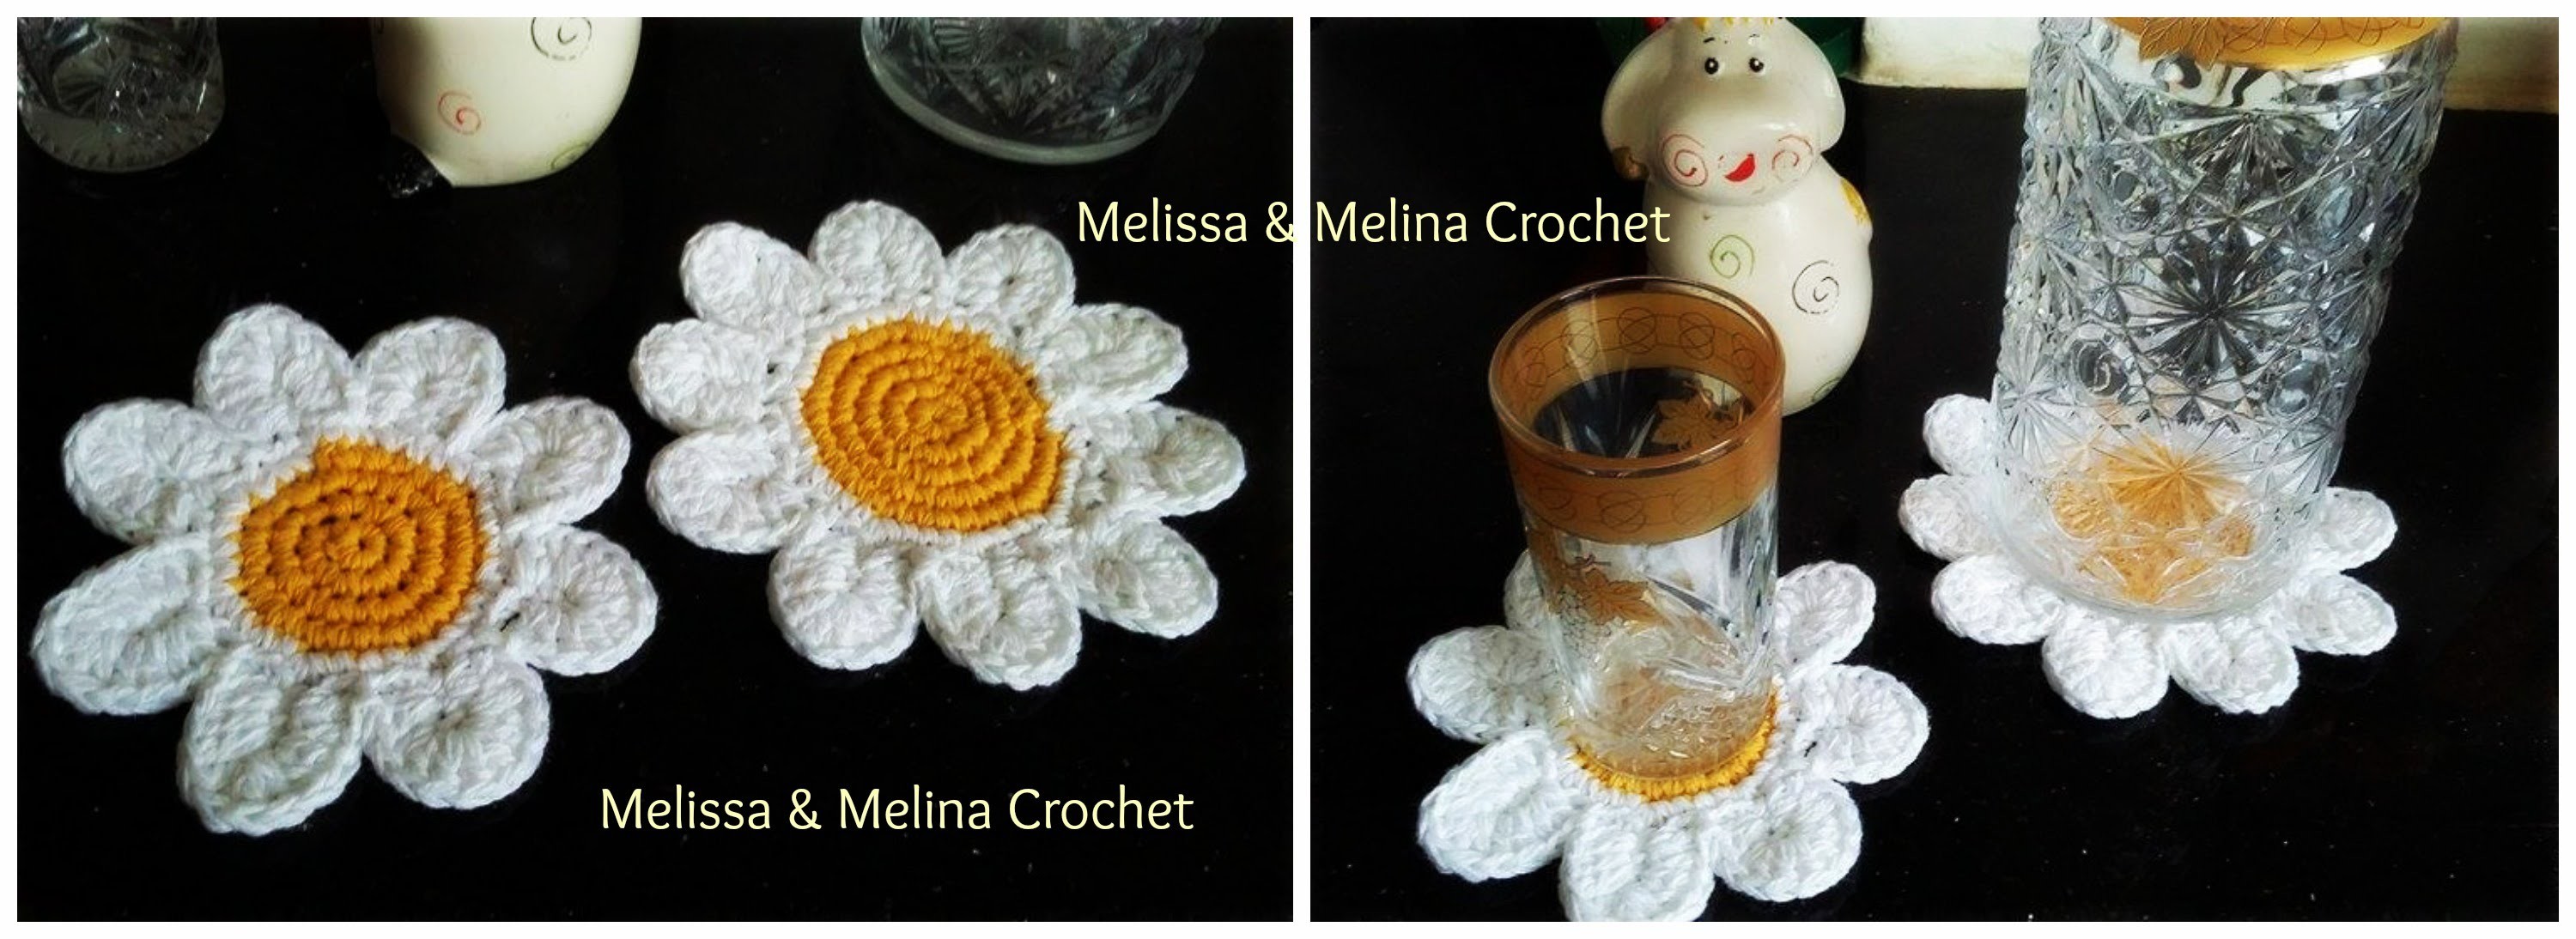 Dessous de verre marguerite fleur au crochet. Daisy flower coasters crochet